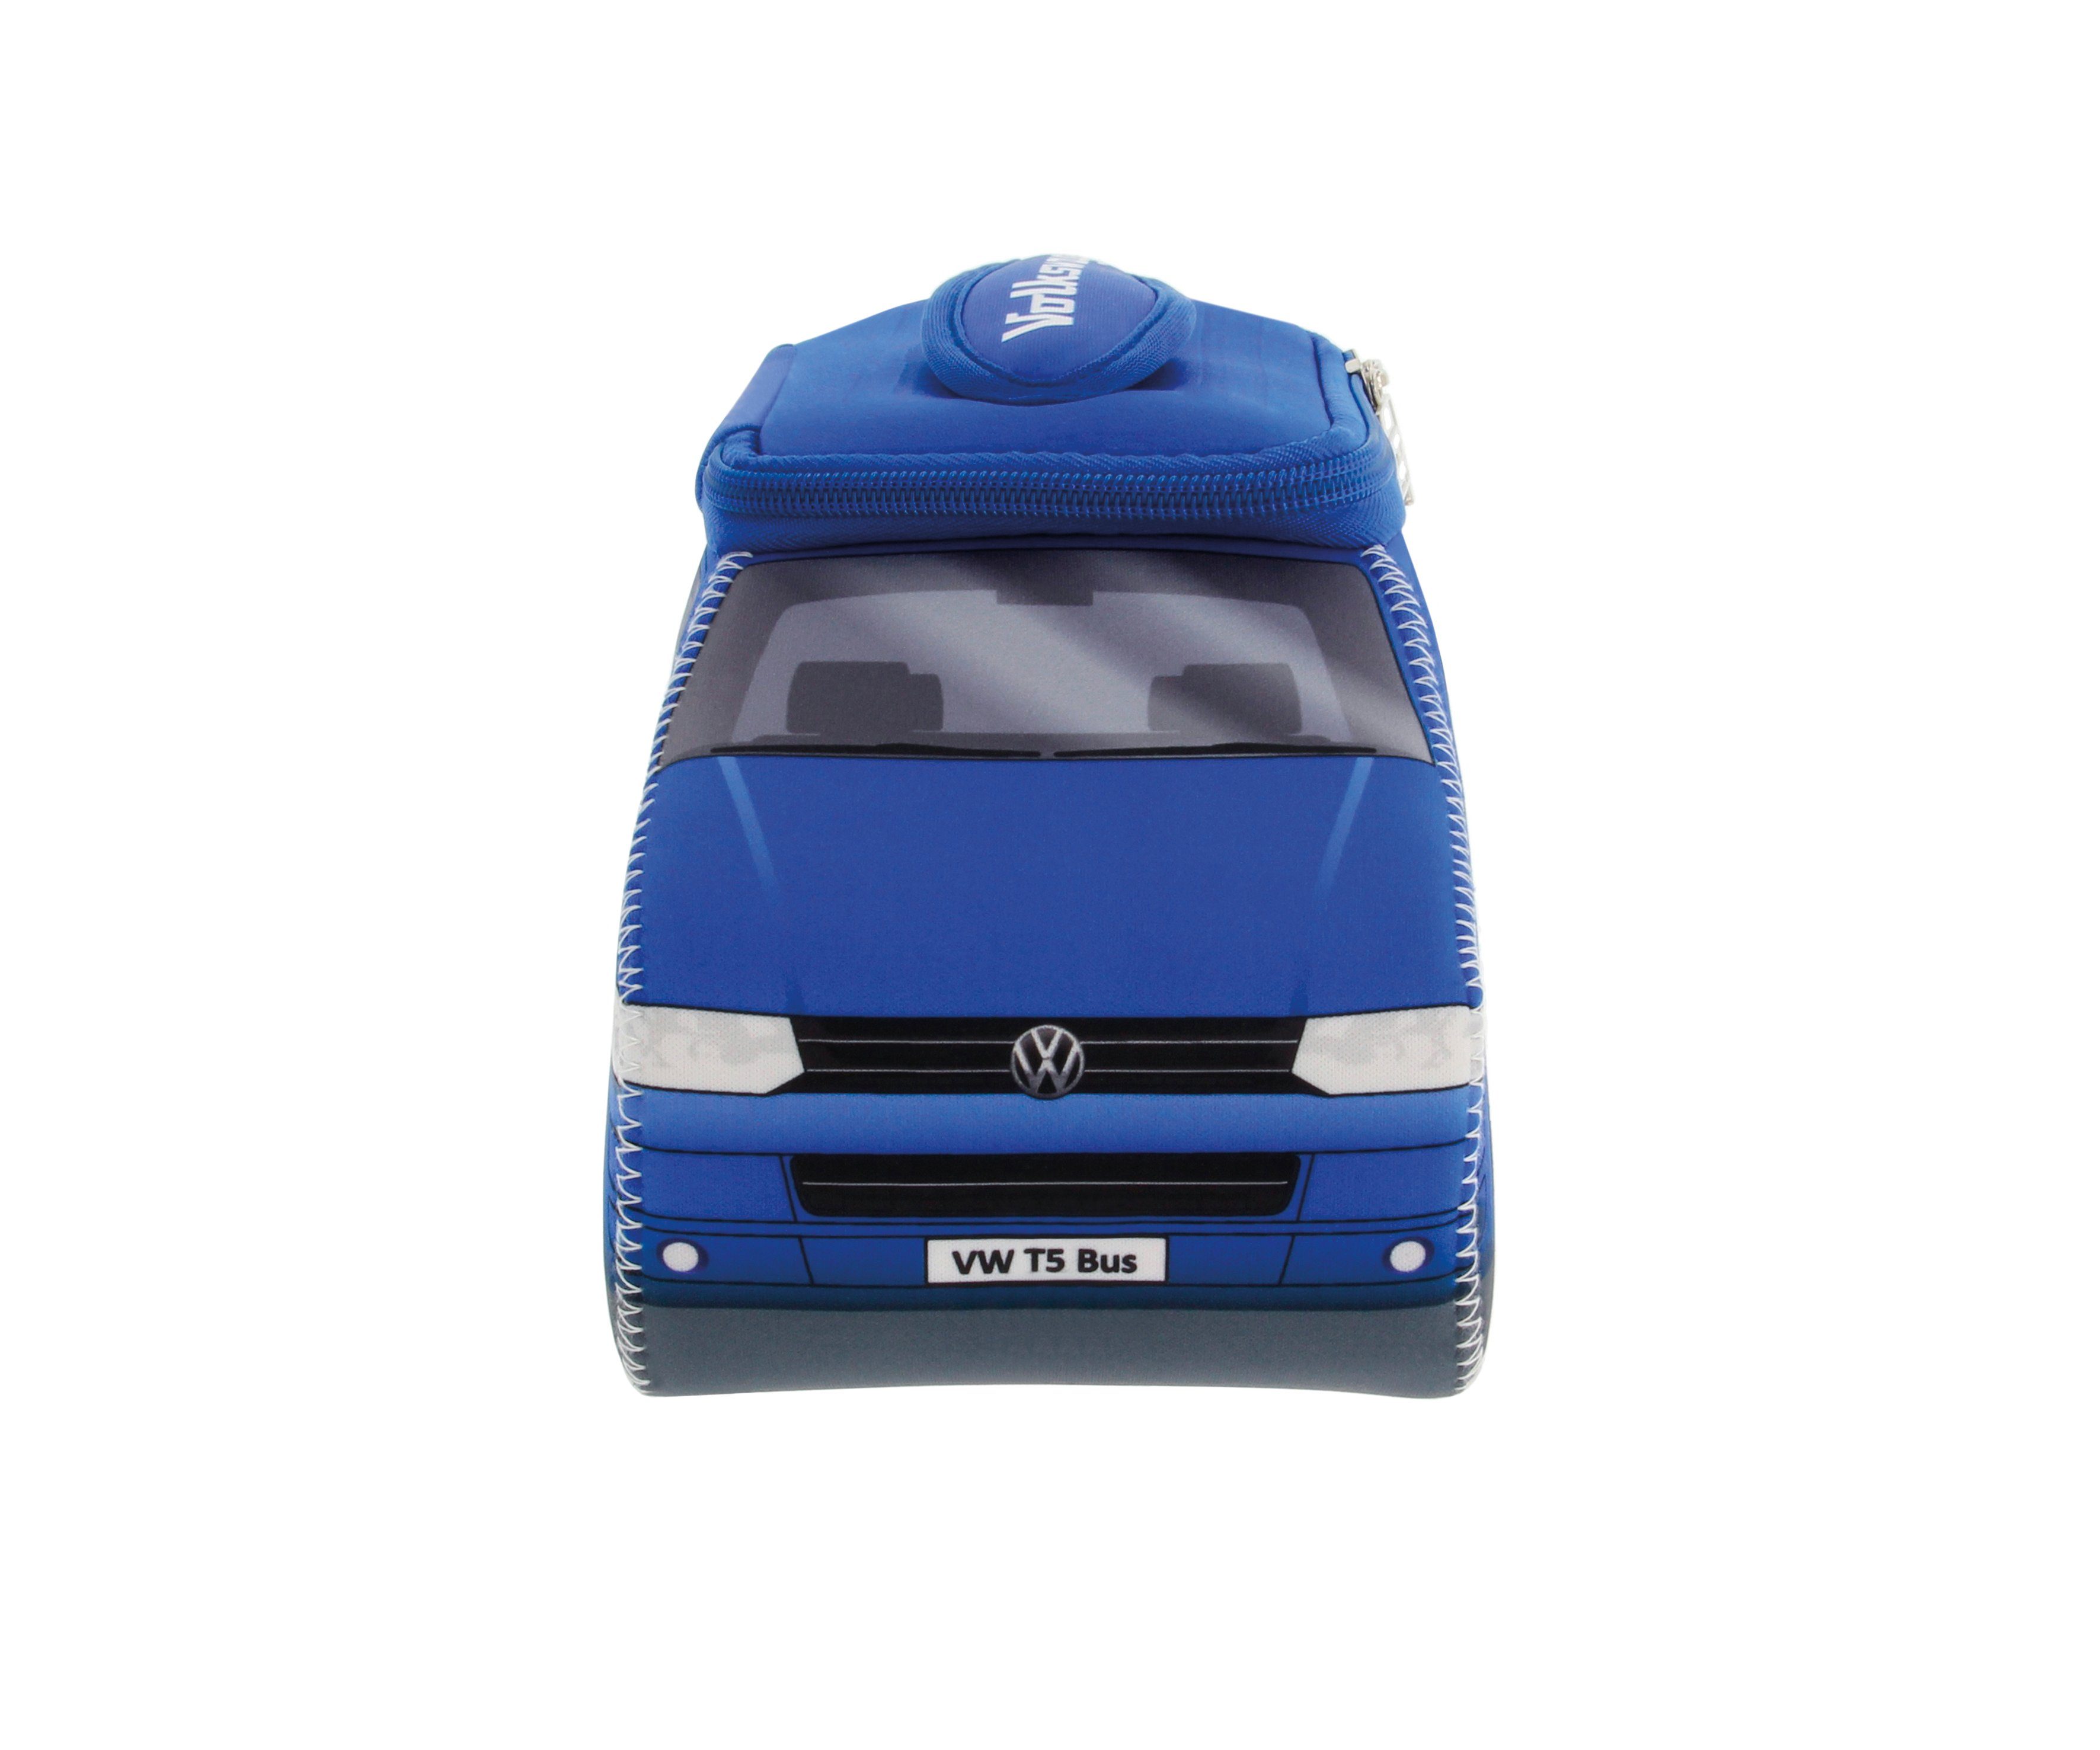 VW Collection by BRISA Kosmetiktasche Volkswagen Universaltasche im VW Bulli T5 Design, Universaltasche aus Neopren, 30 x 14 x 12 cm Blau